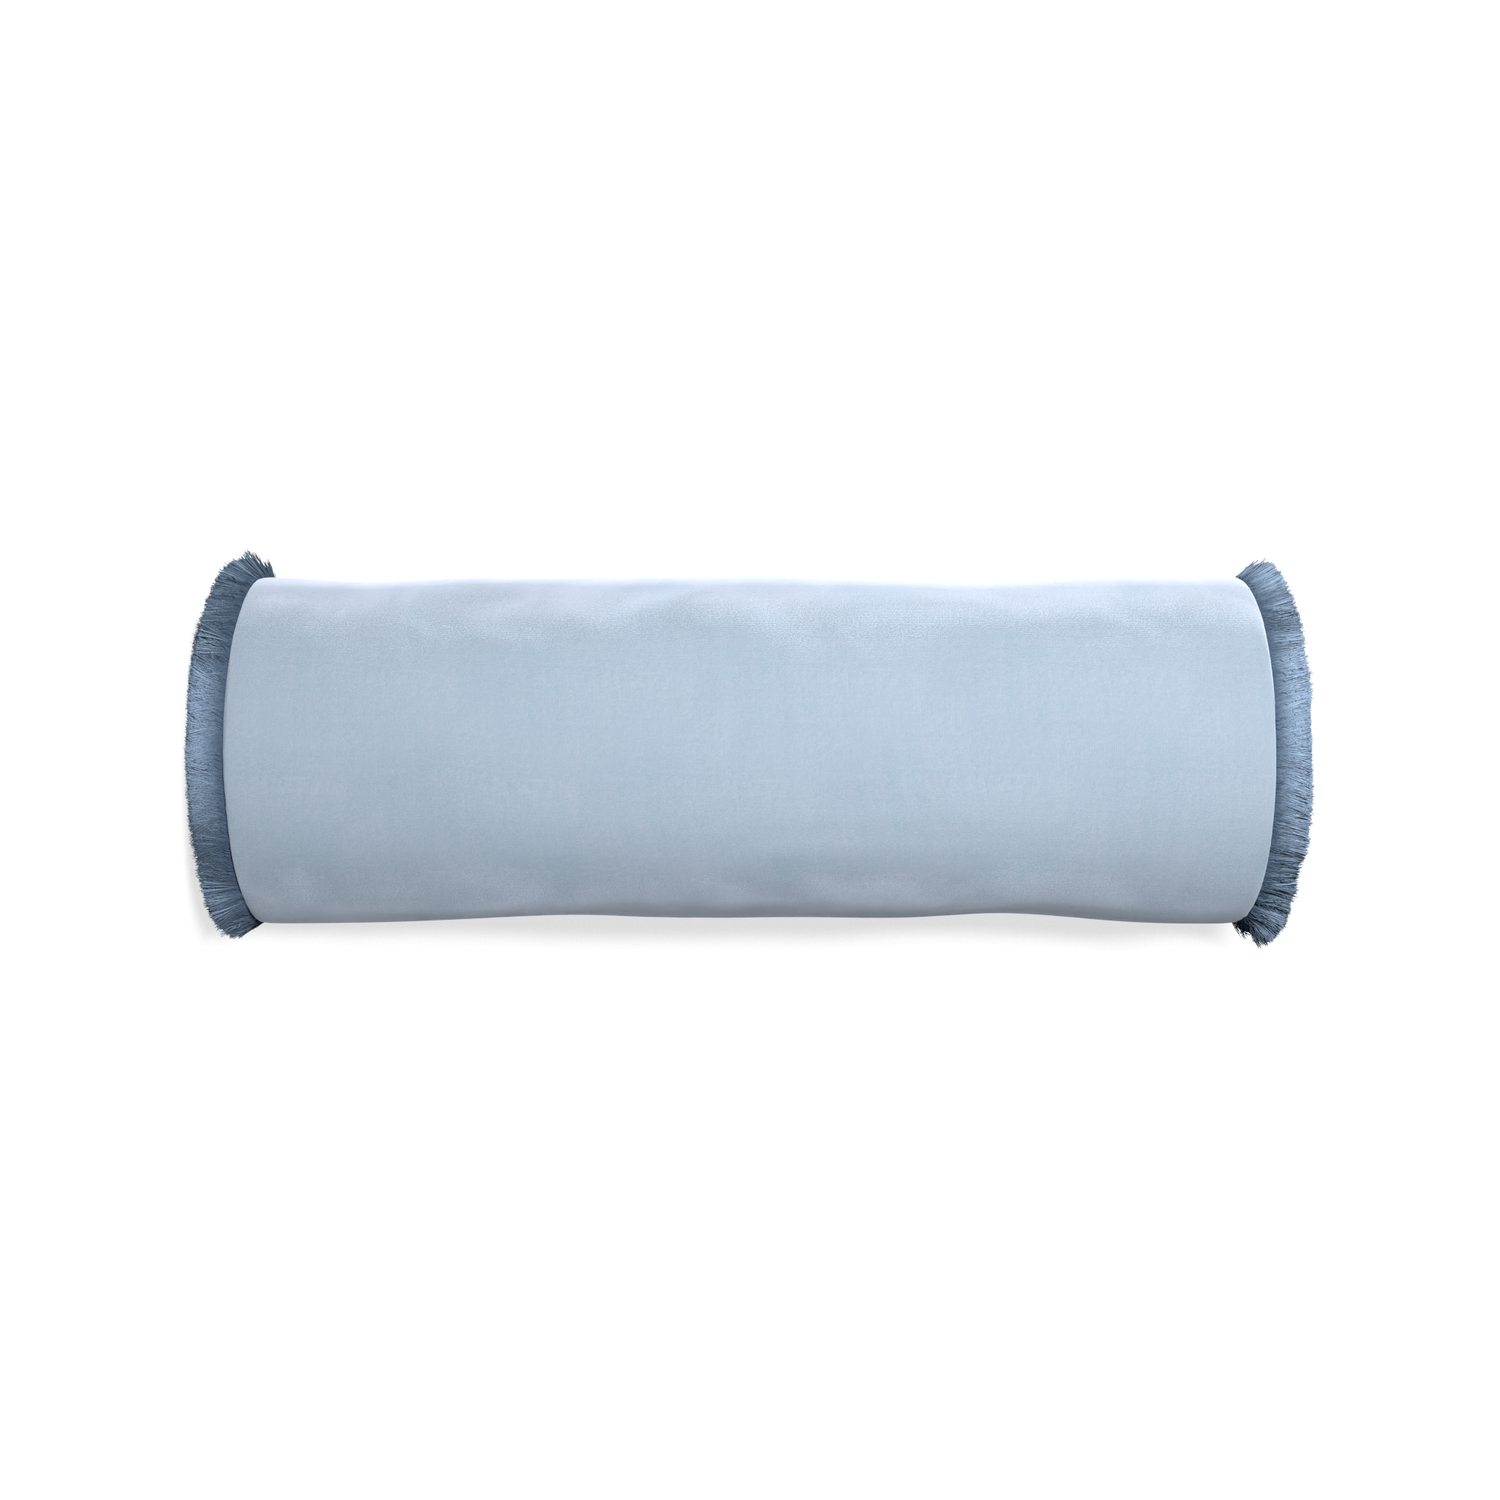 Bolster sky velvet custom pillow with sky fringe on white background